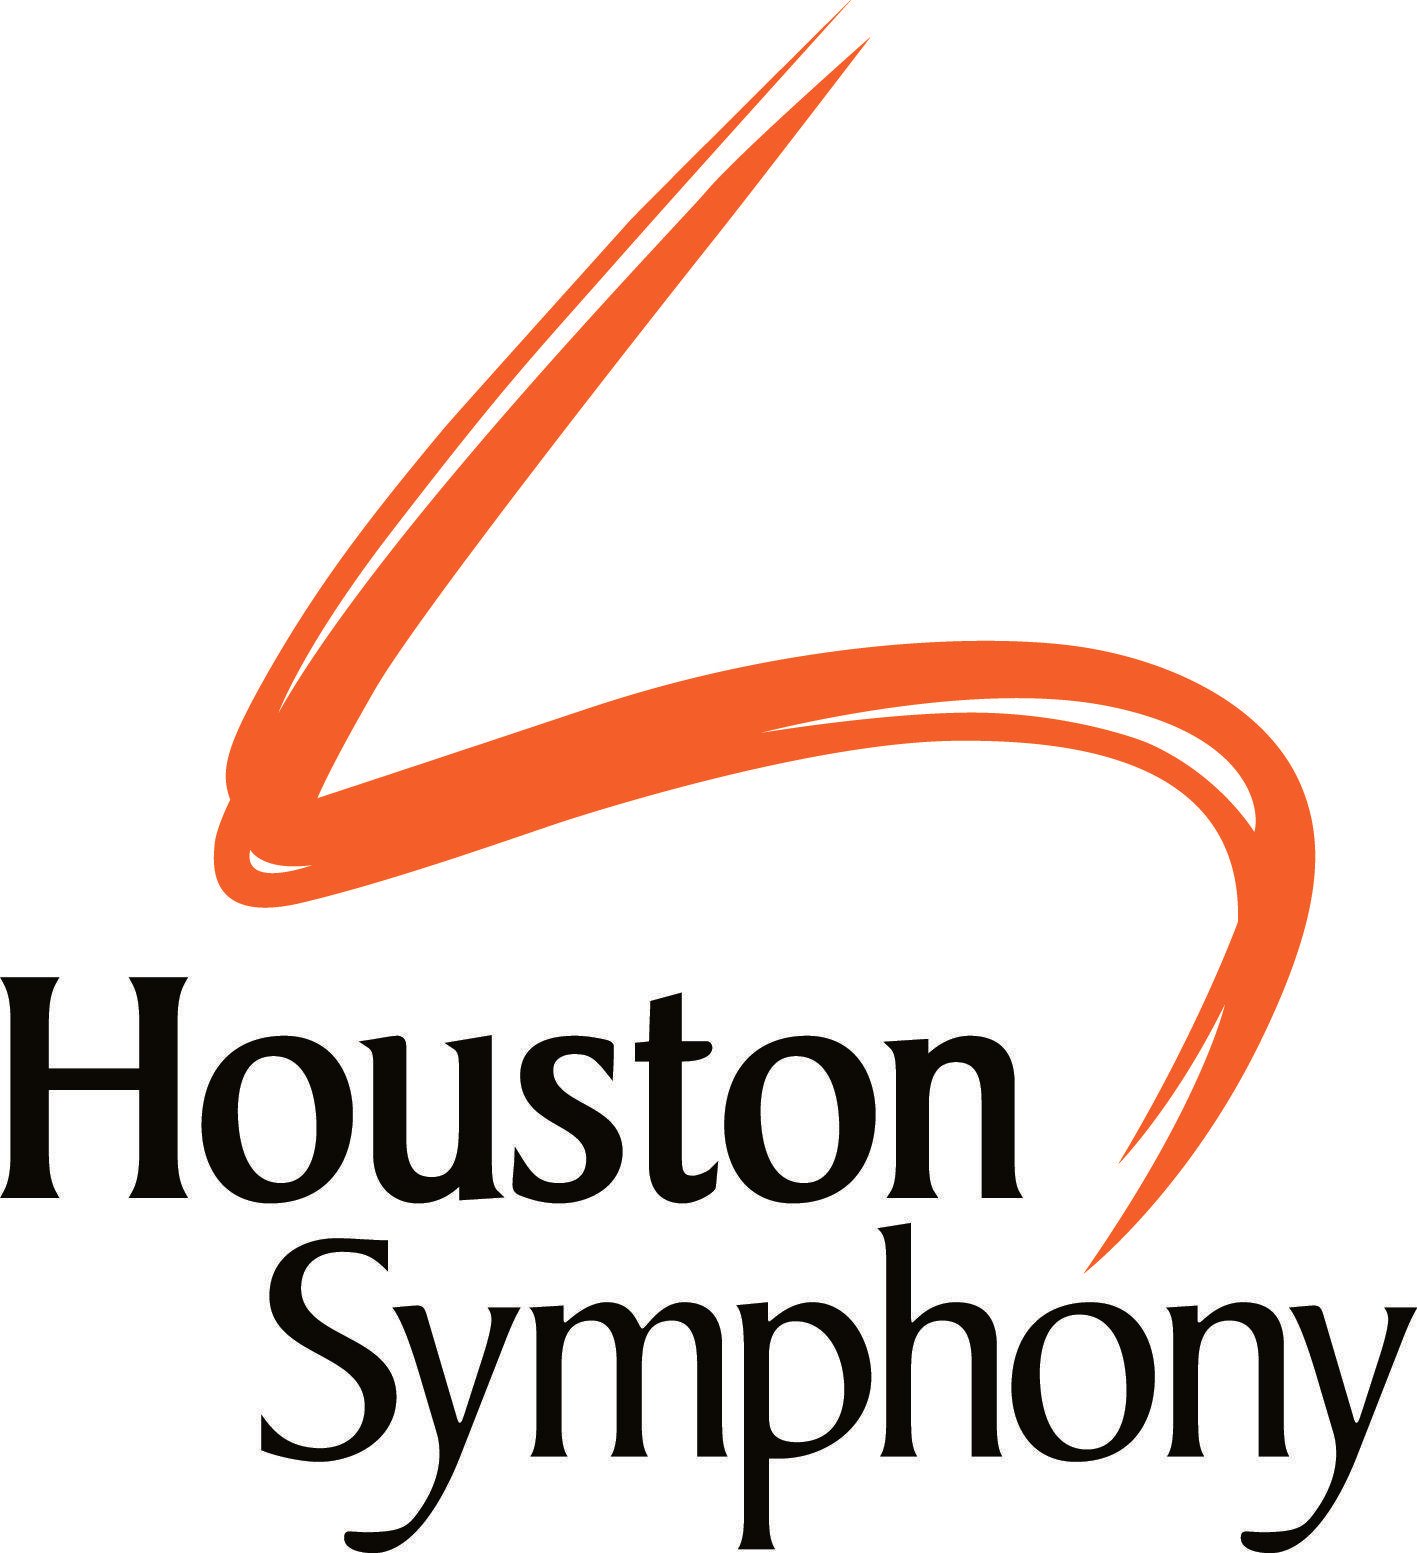 Symphony Logo - Houston Symphony Orchestra | Logopedia | FANDOM powered by Wikia